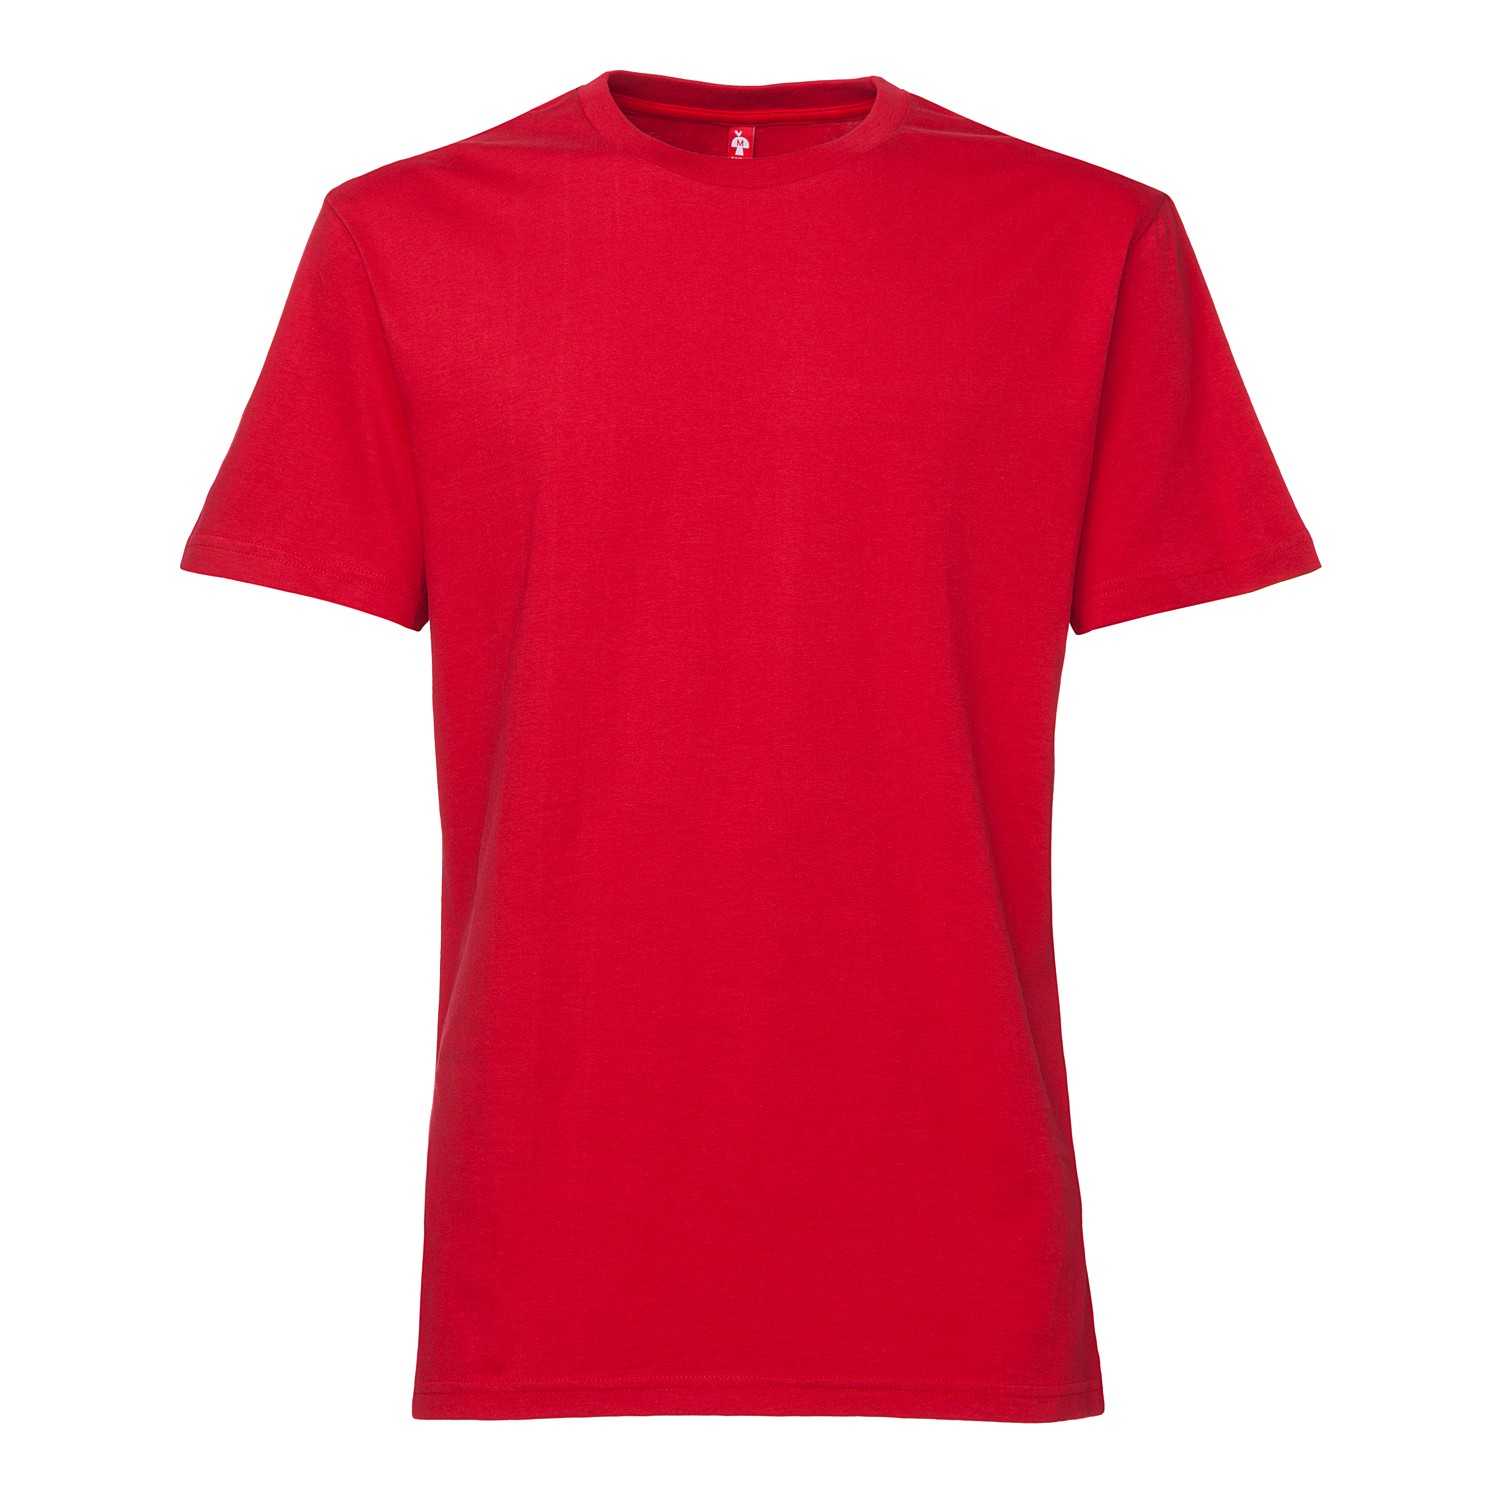 T Shirt Red Plain - ClipArt Best